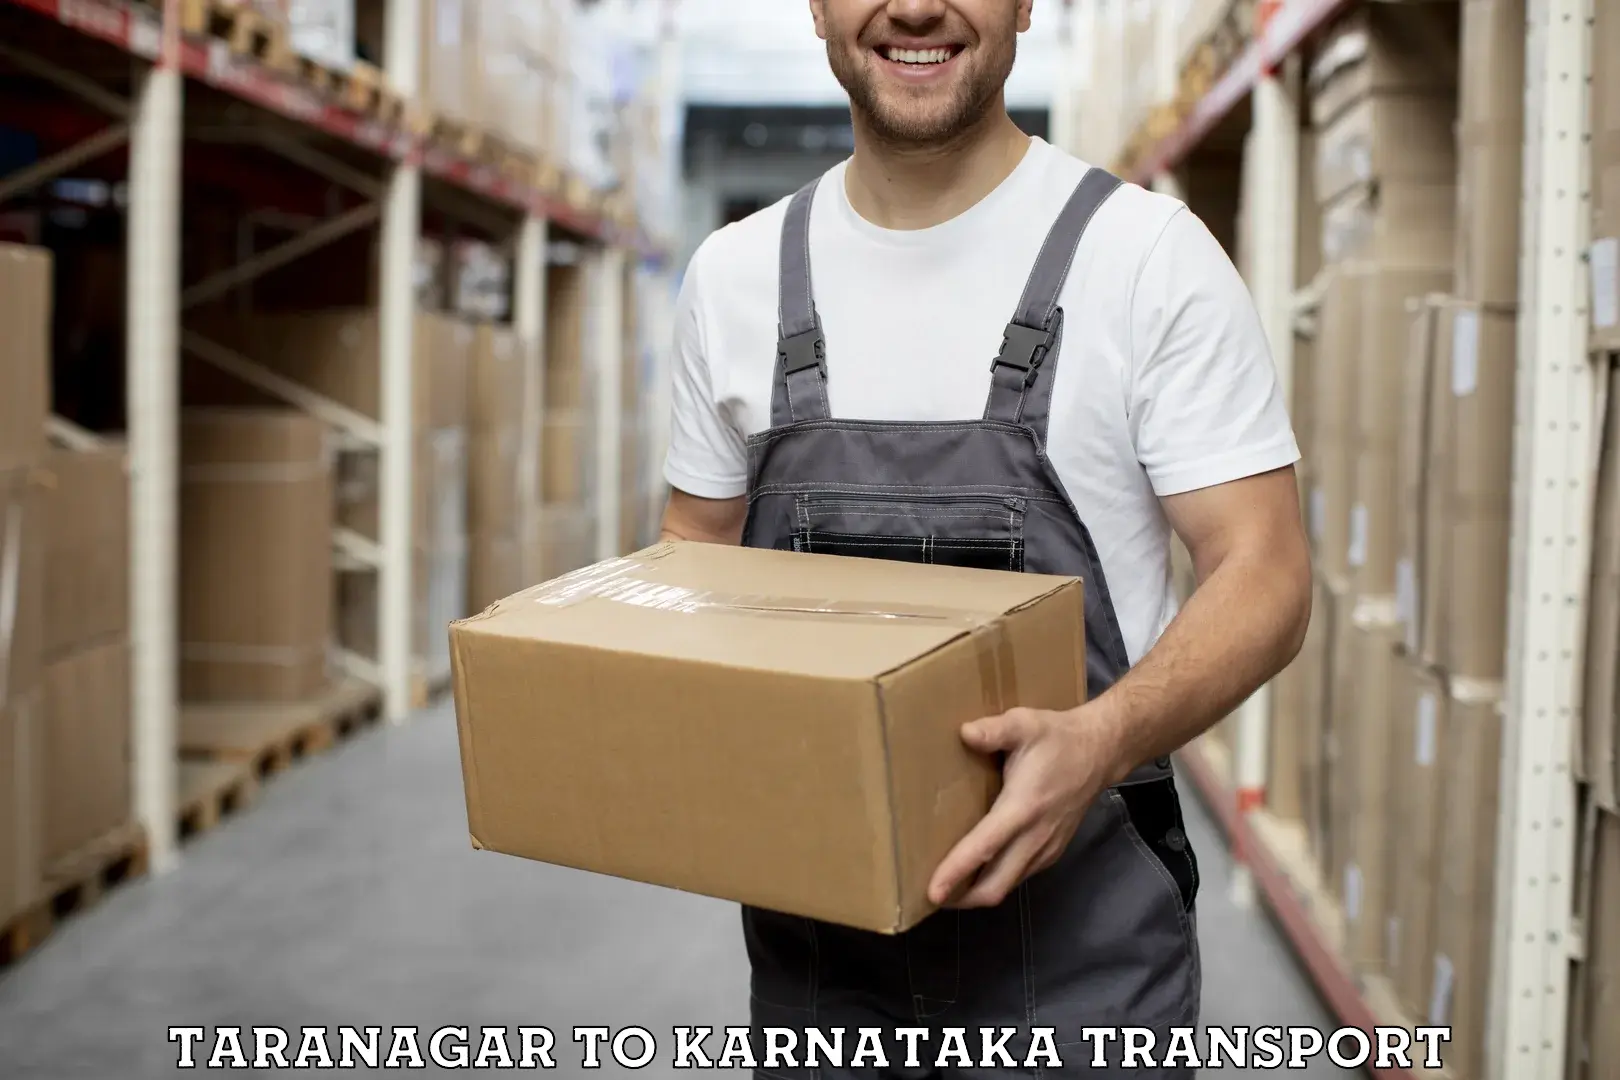 Transportation solution services Taranagar to Kanjarakatte